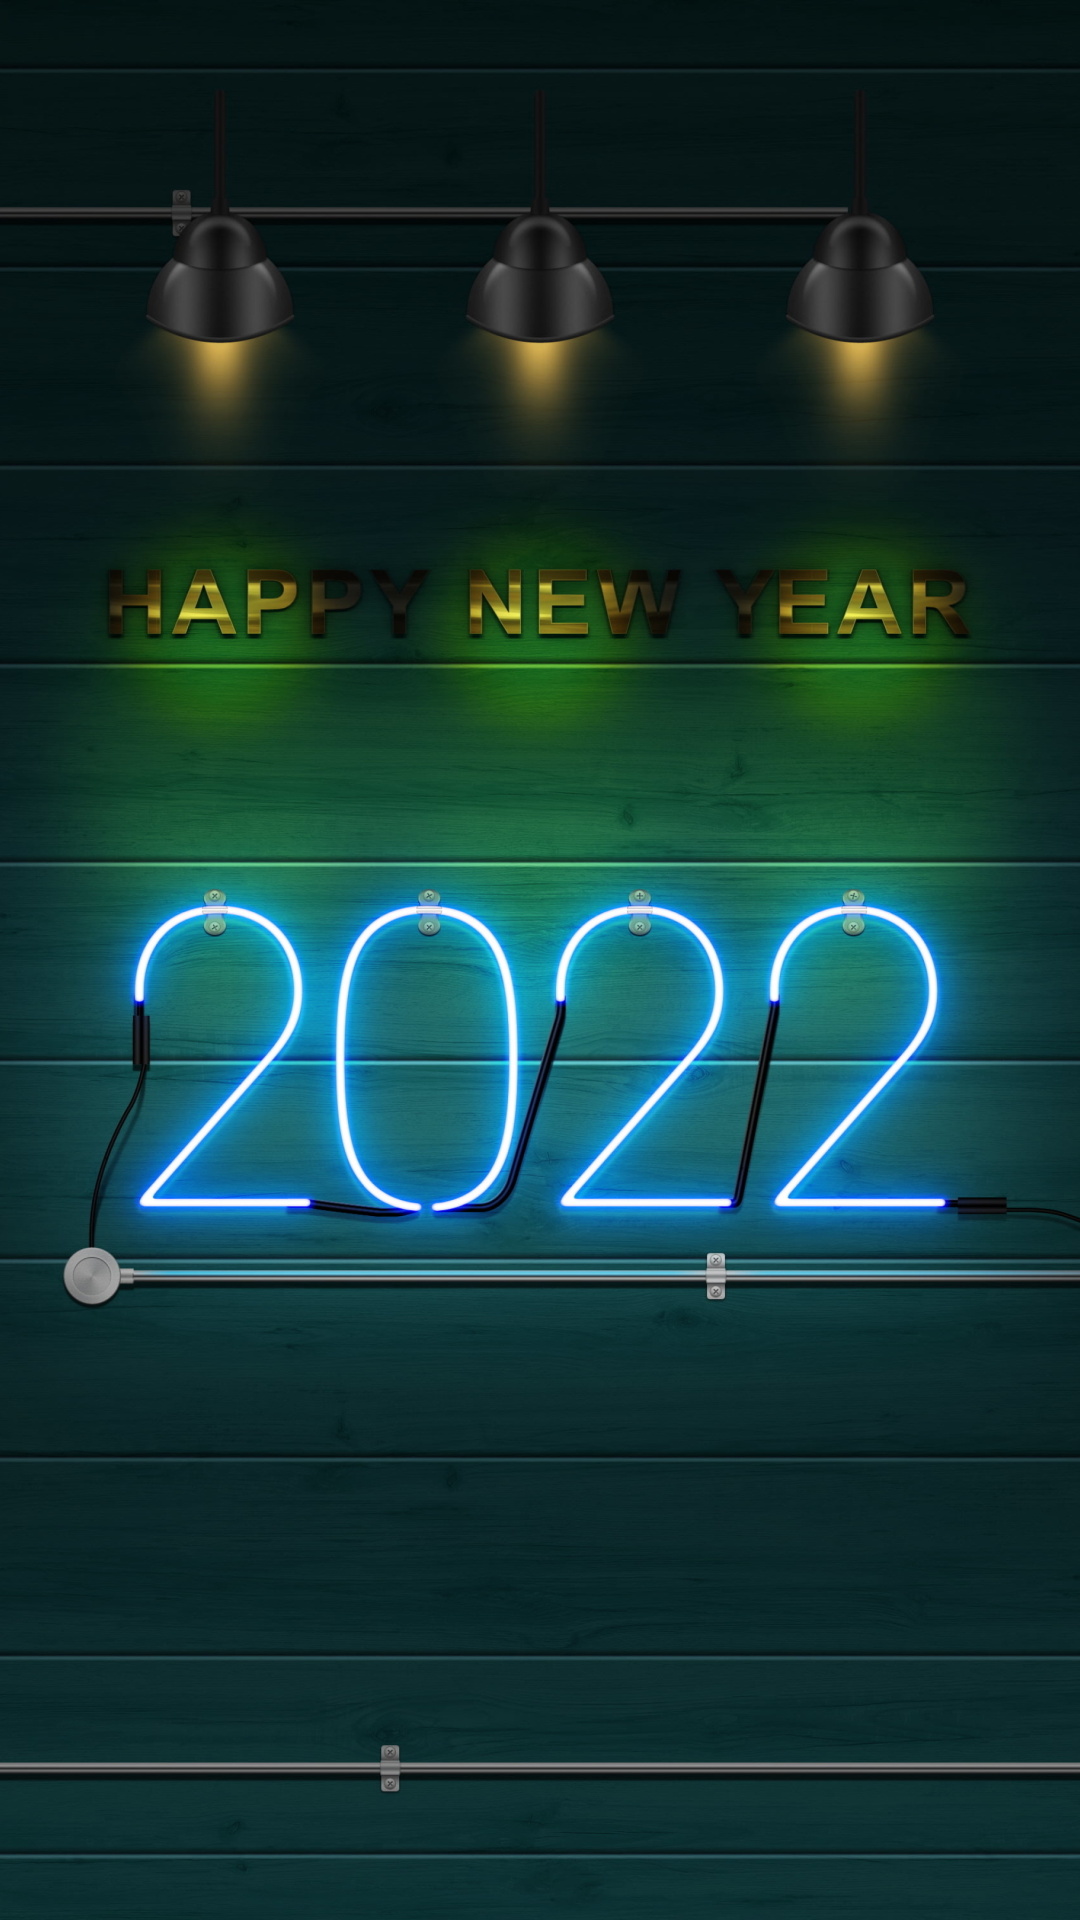 Happy New Year 2022 Photo screenshot #1 1080x1920